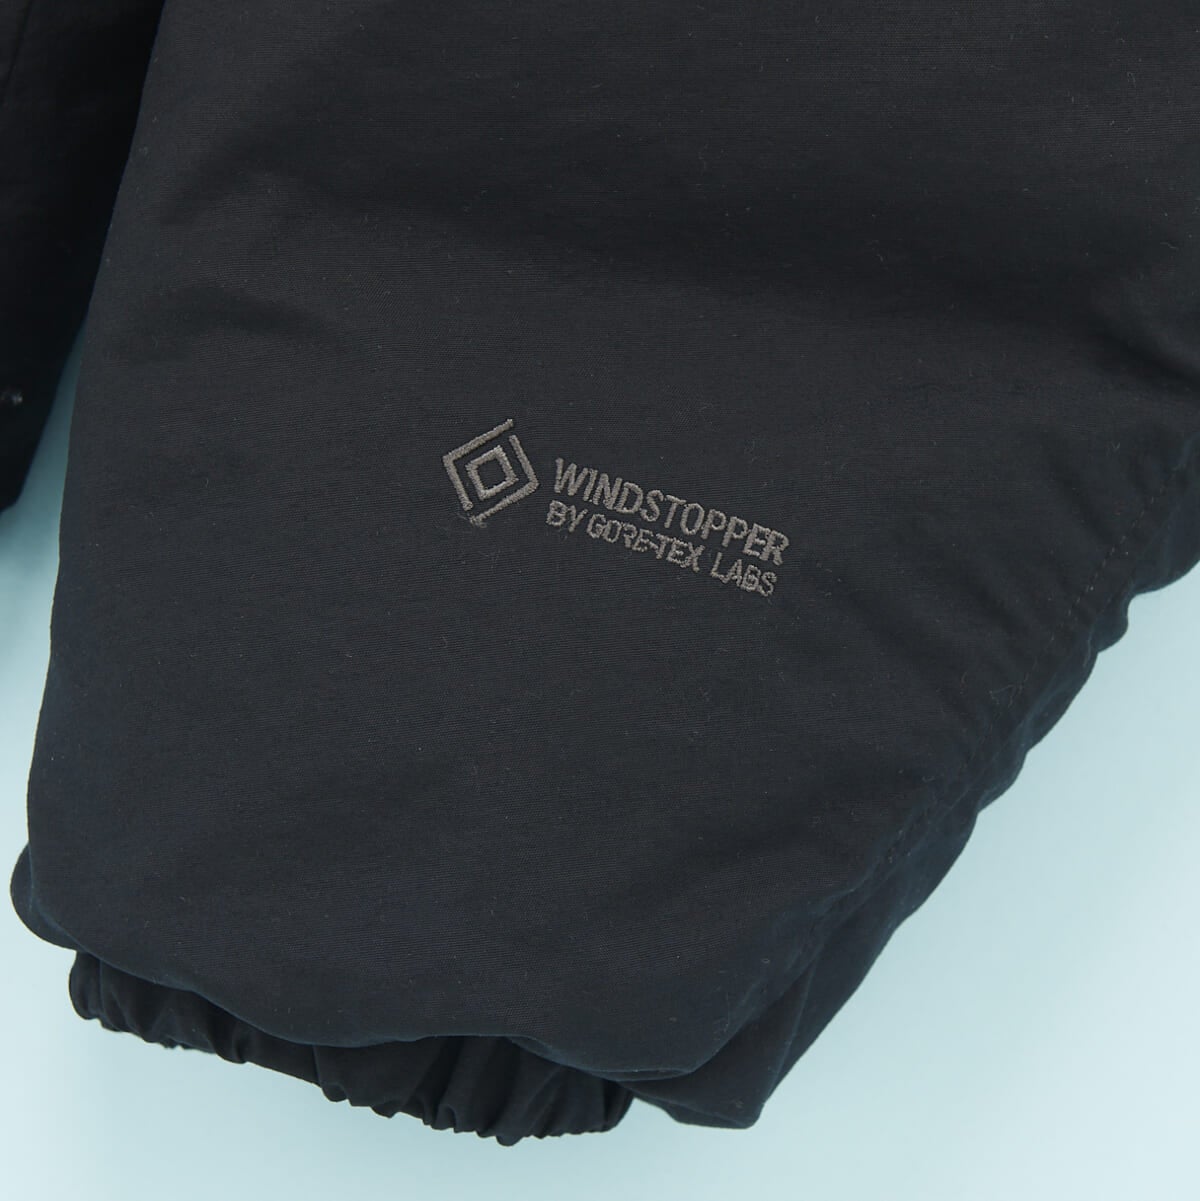 「ザ・ノース・フェイス」の23年冬の新作黒ダウンジャケット「オルタレーションシエラジャケット」の袖のウィンドストッパーのロゴ